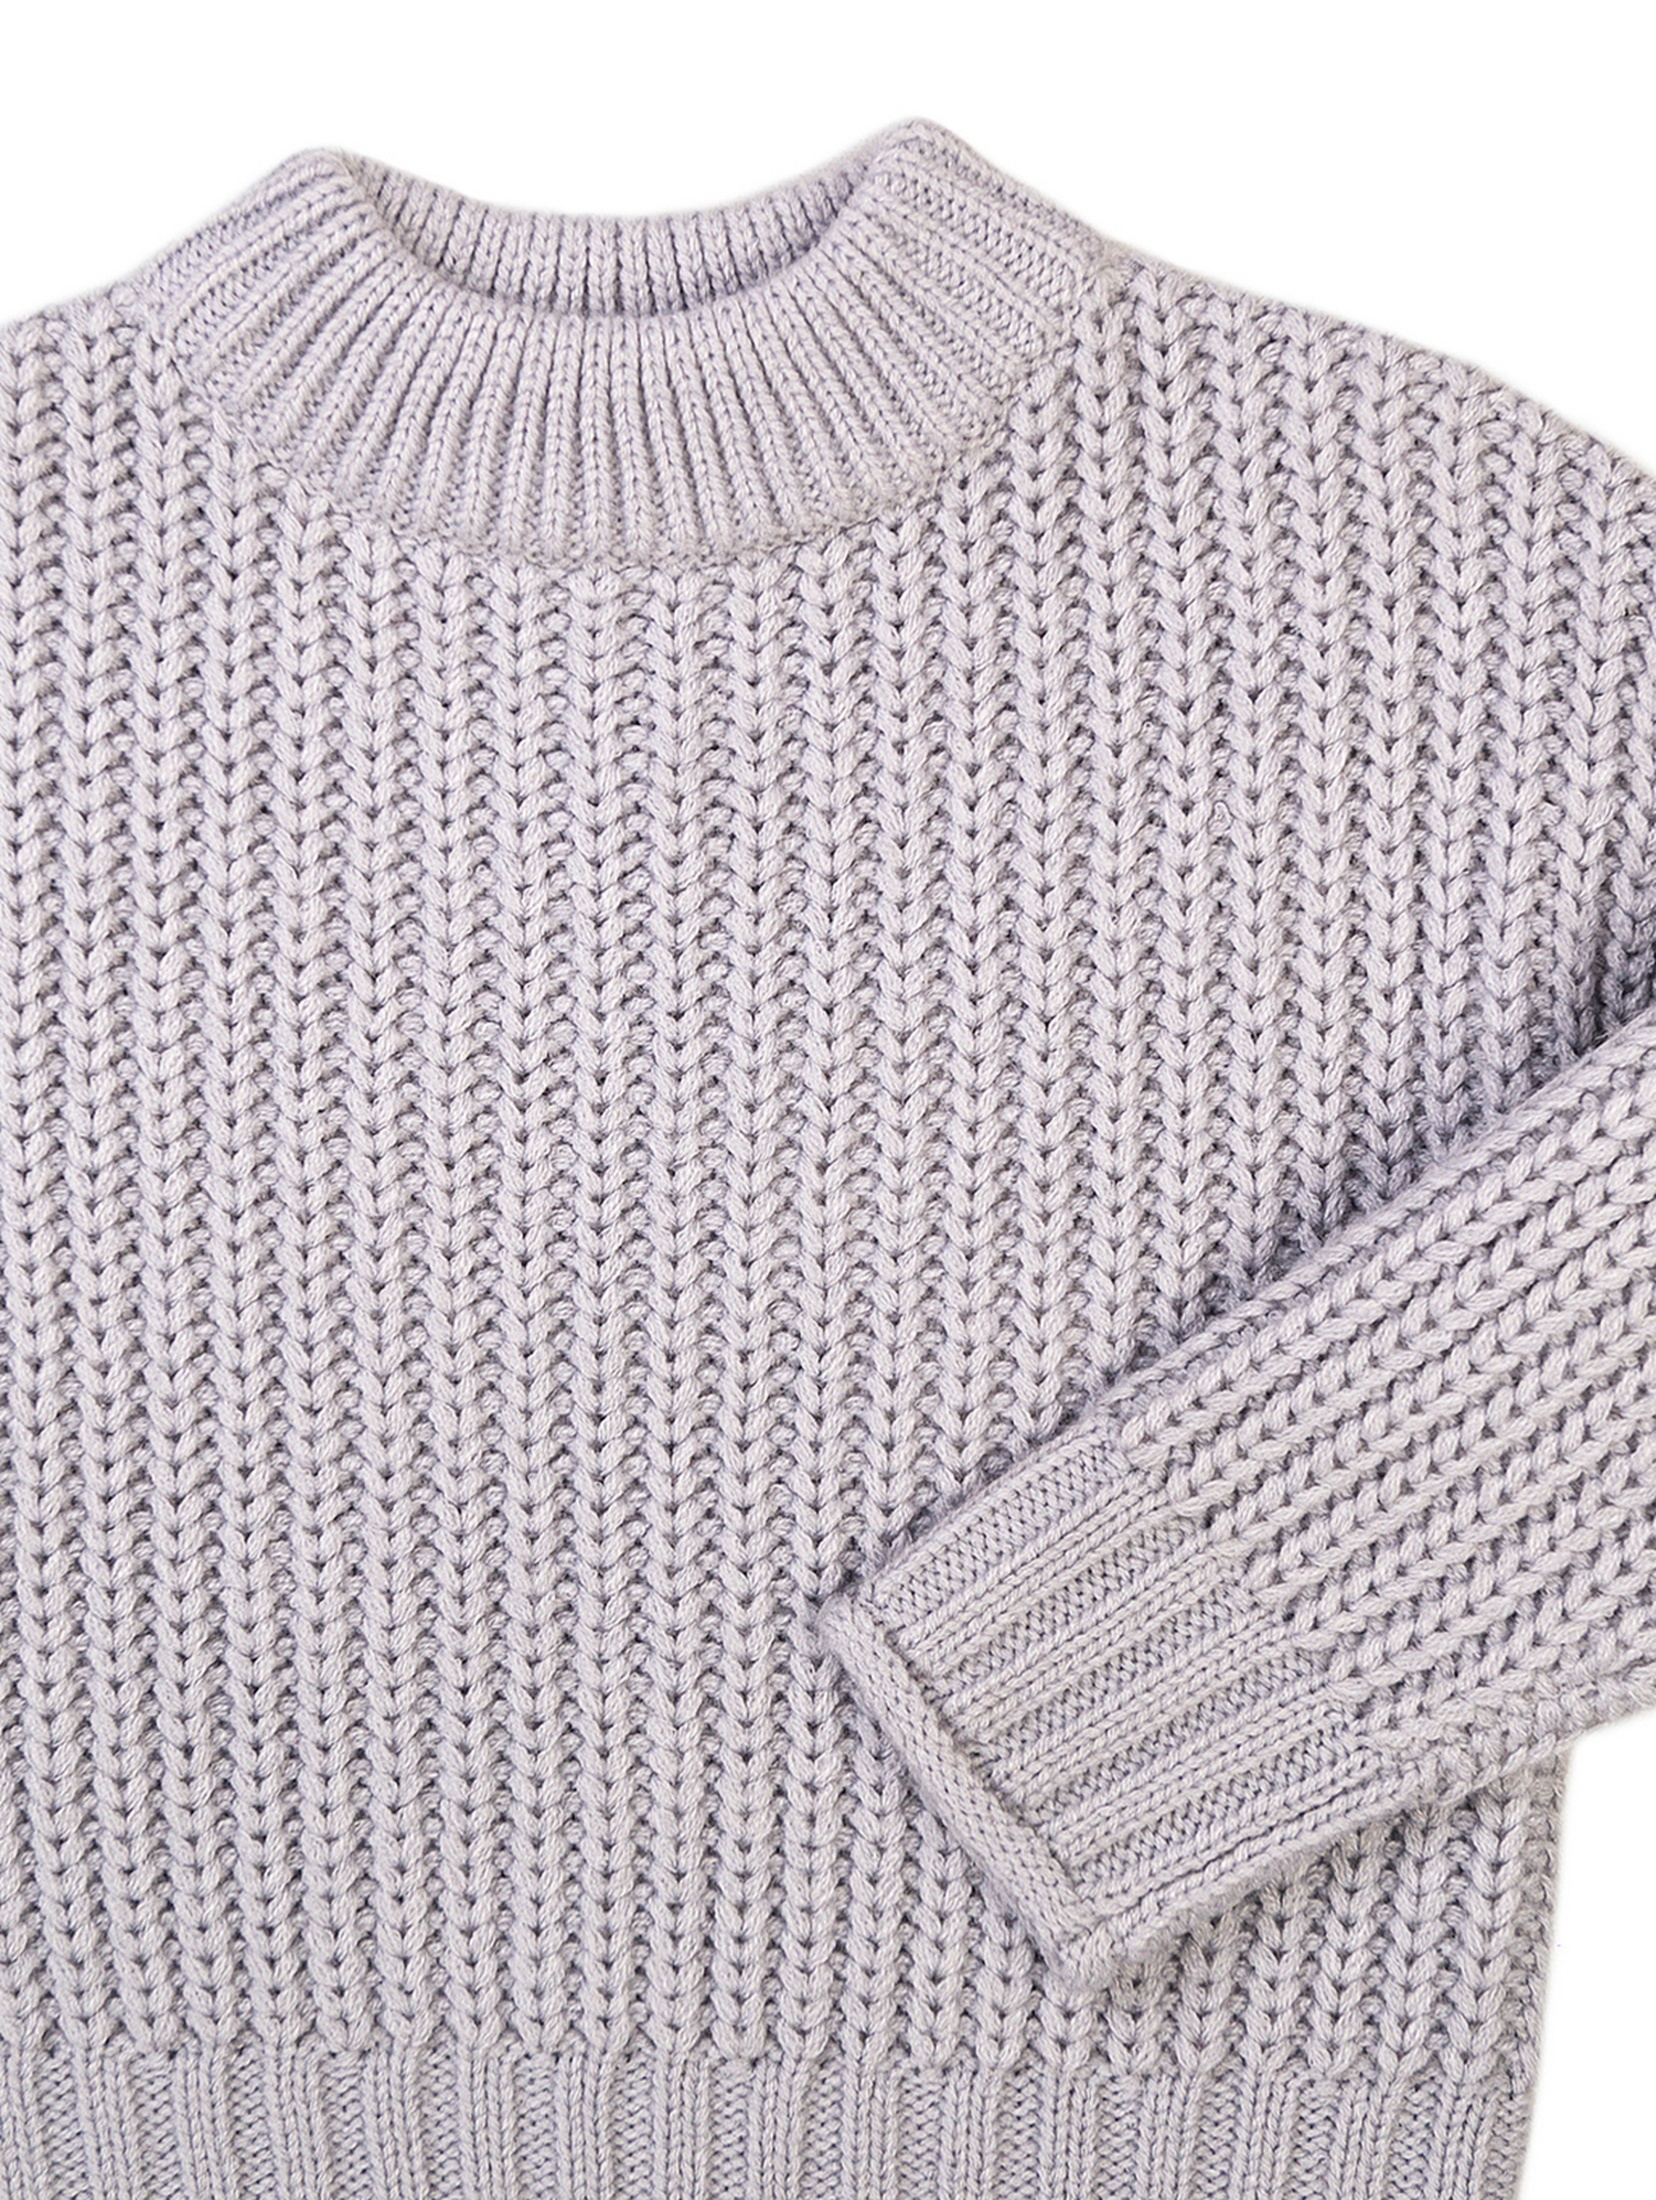 Niemowlęcy sweter nierozpinany z półgolfem - szary